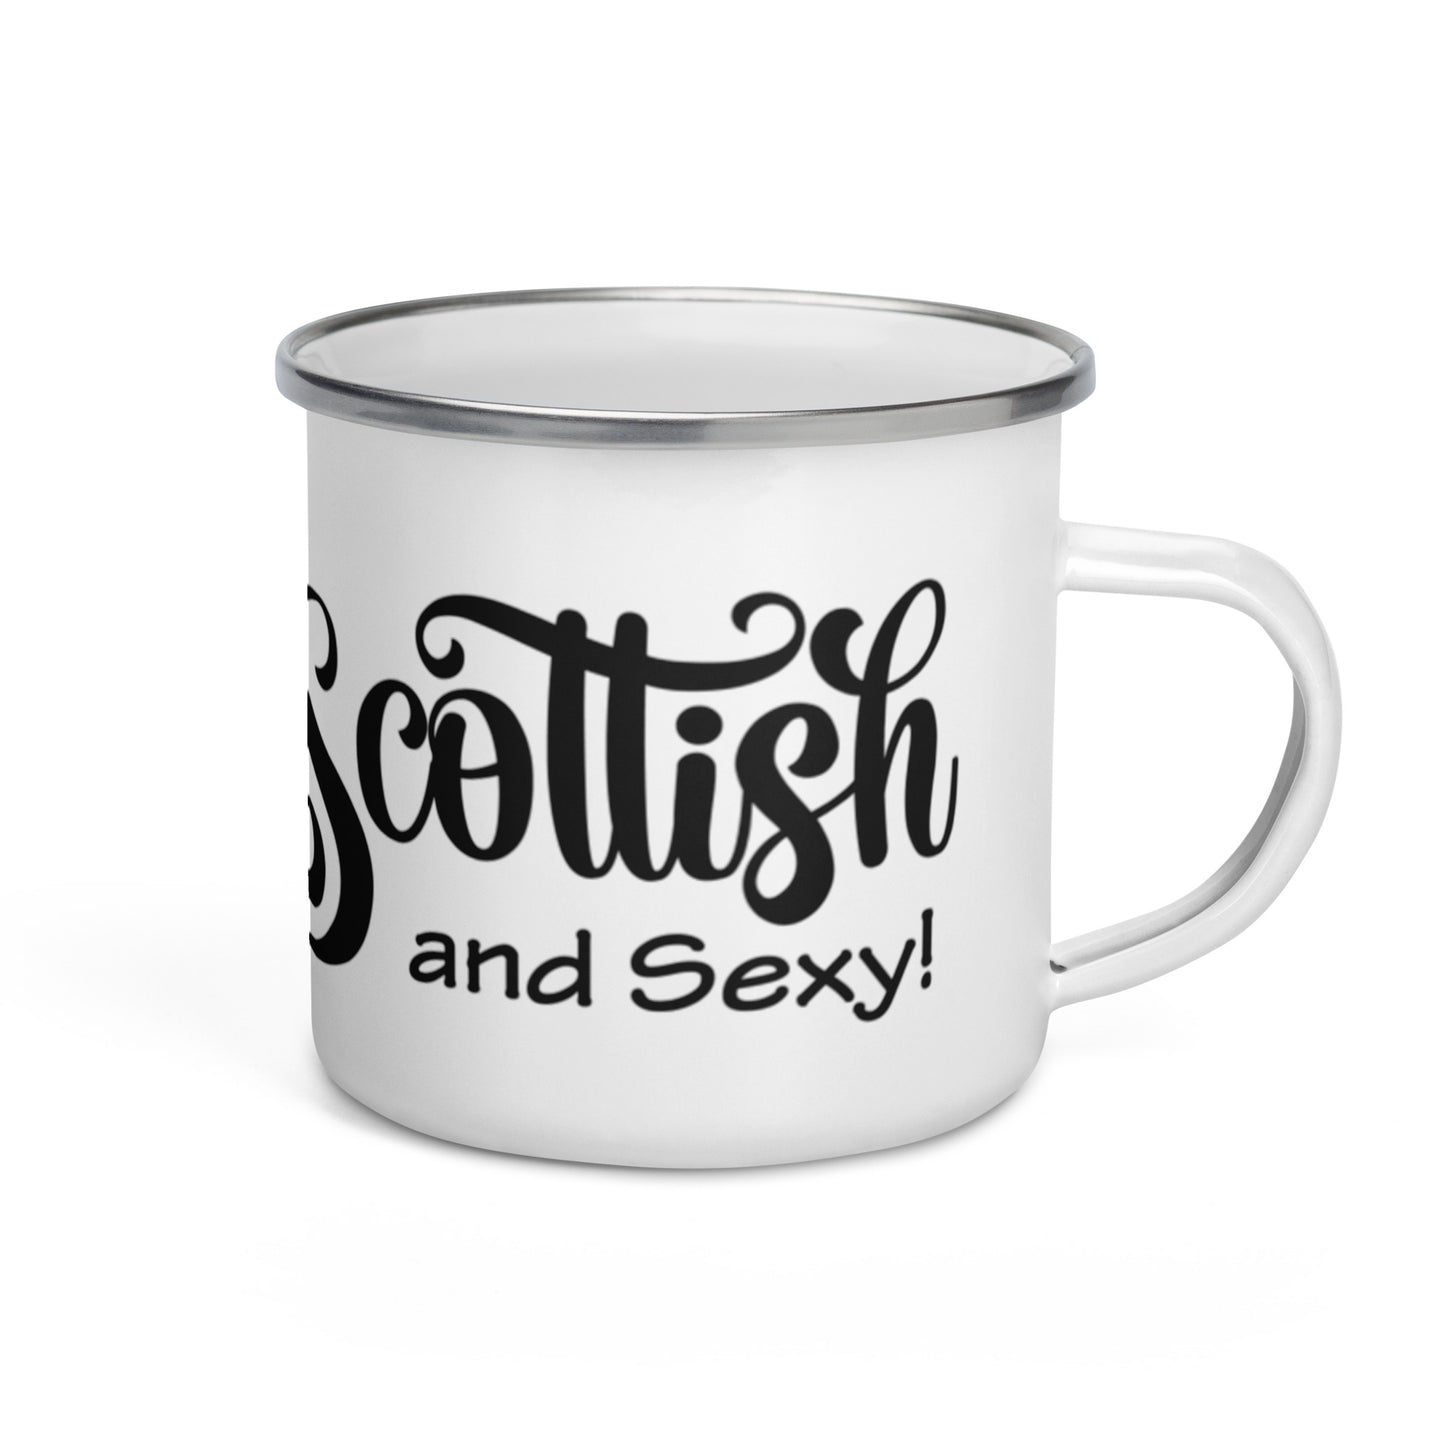 Scottish and Sexy Enamel Mug